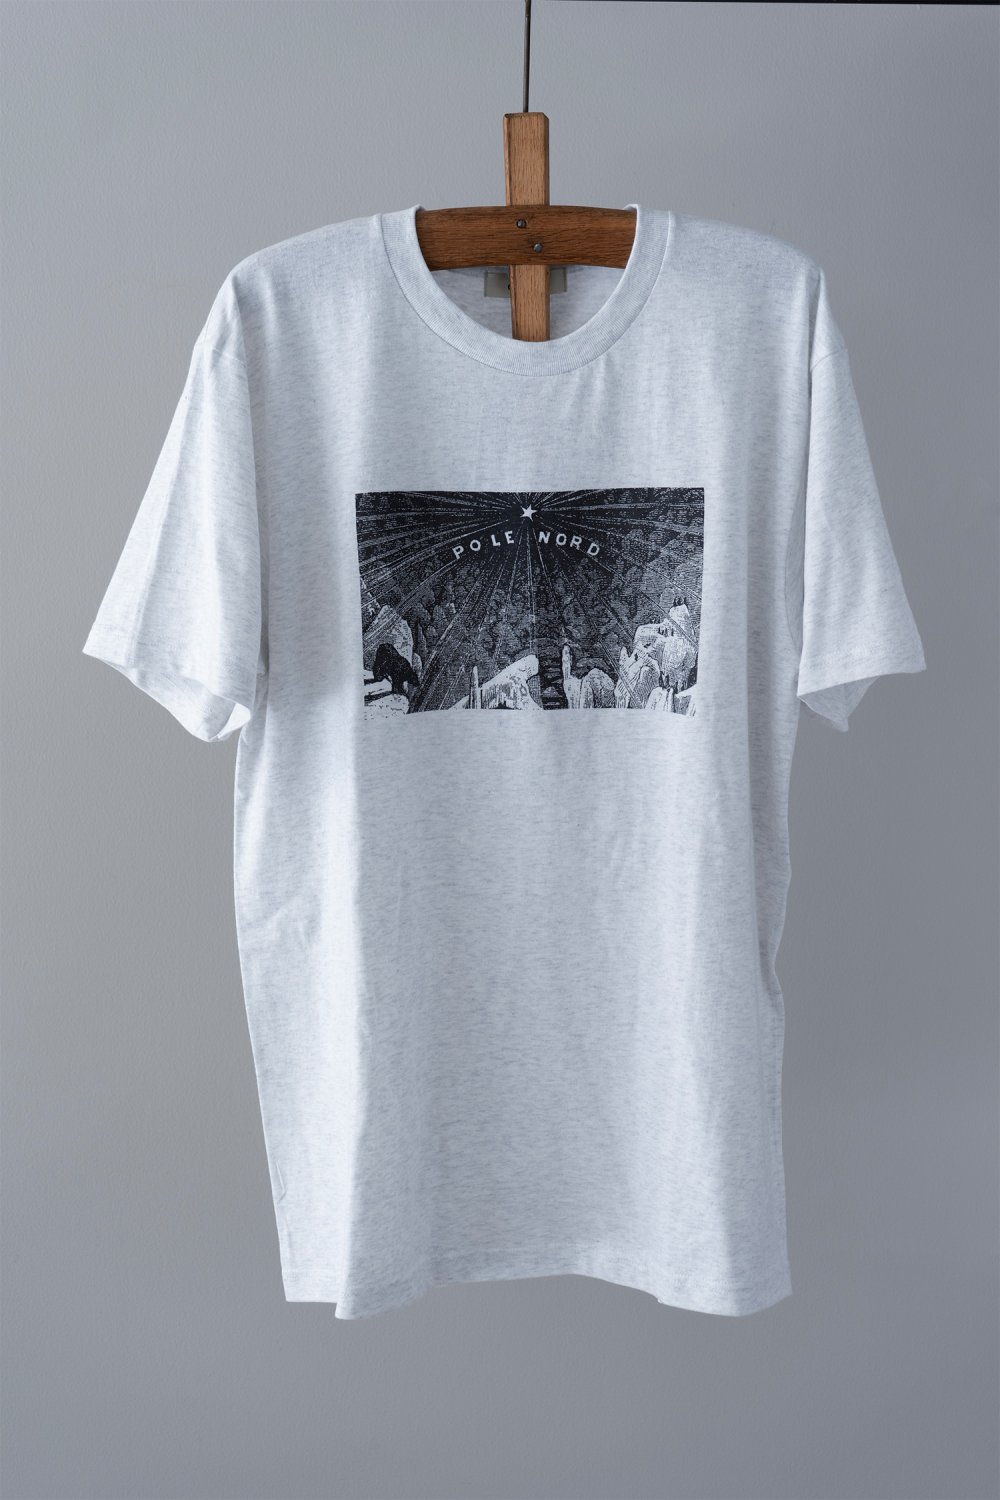 eLfinFolk Pole Nord T-shirt ( Light Gray )